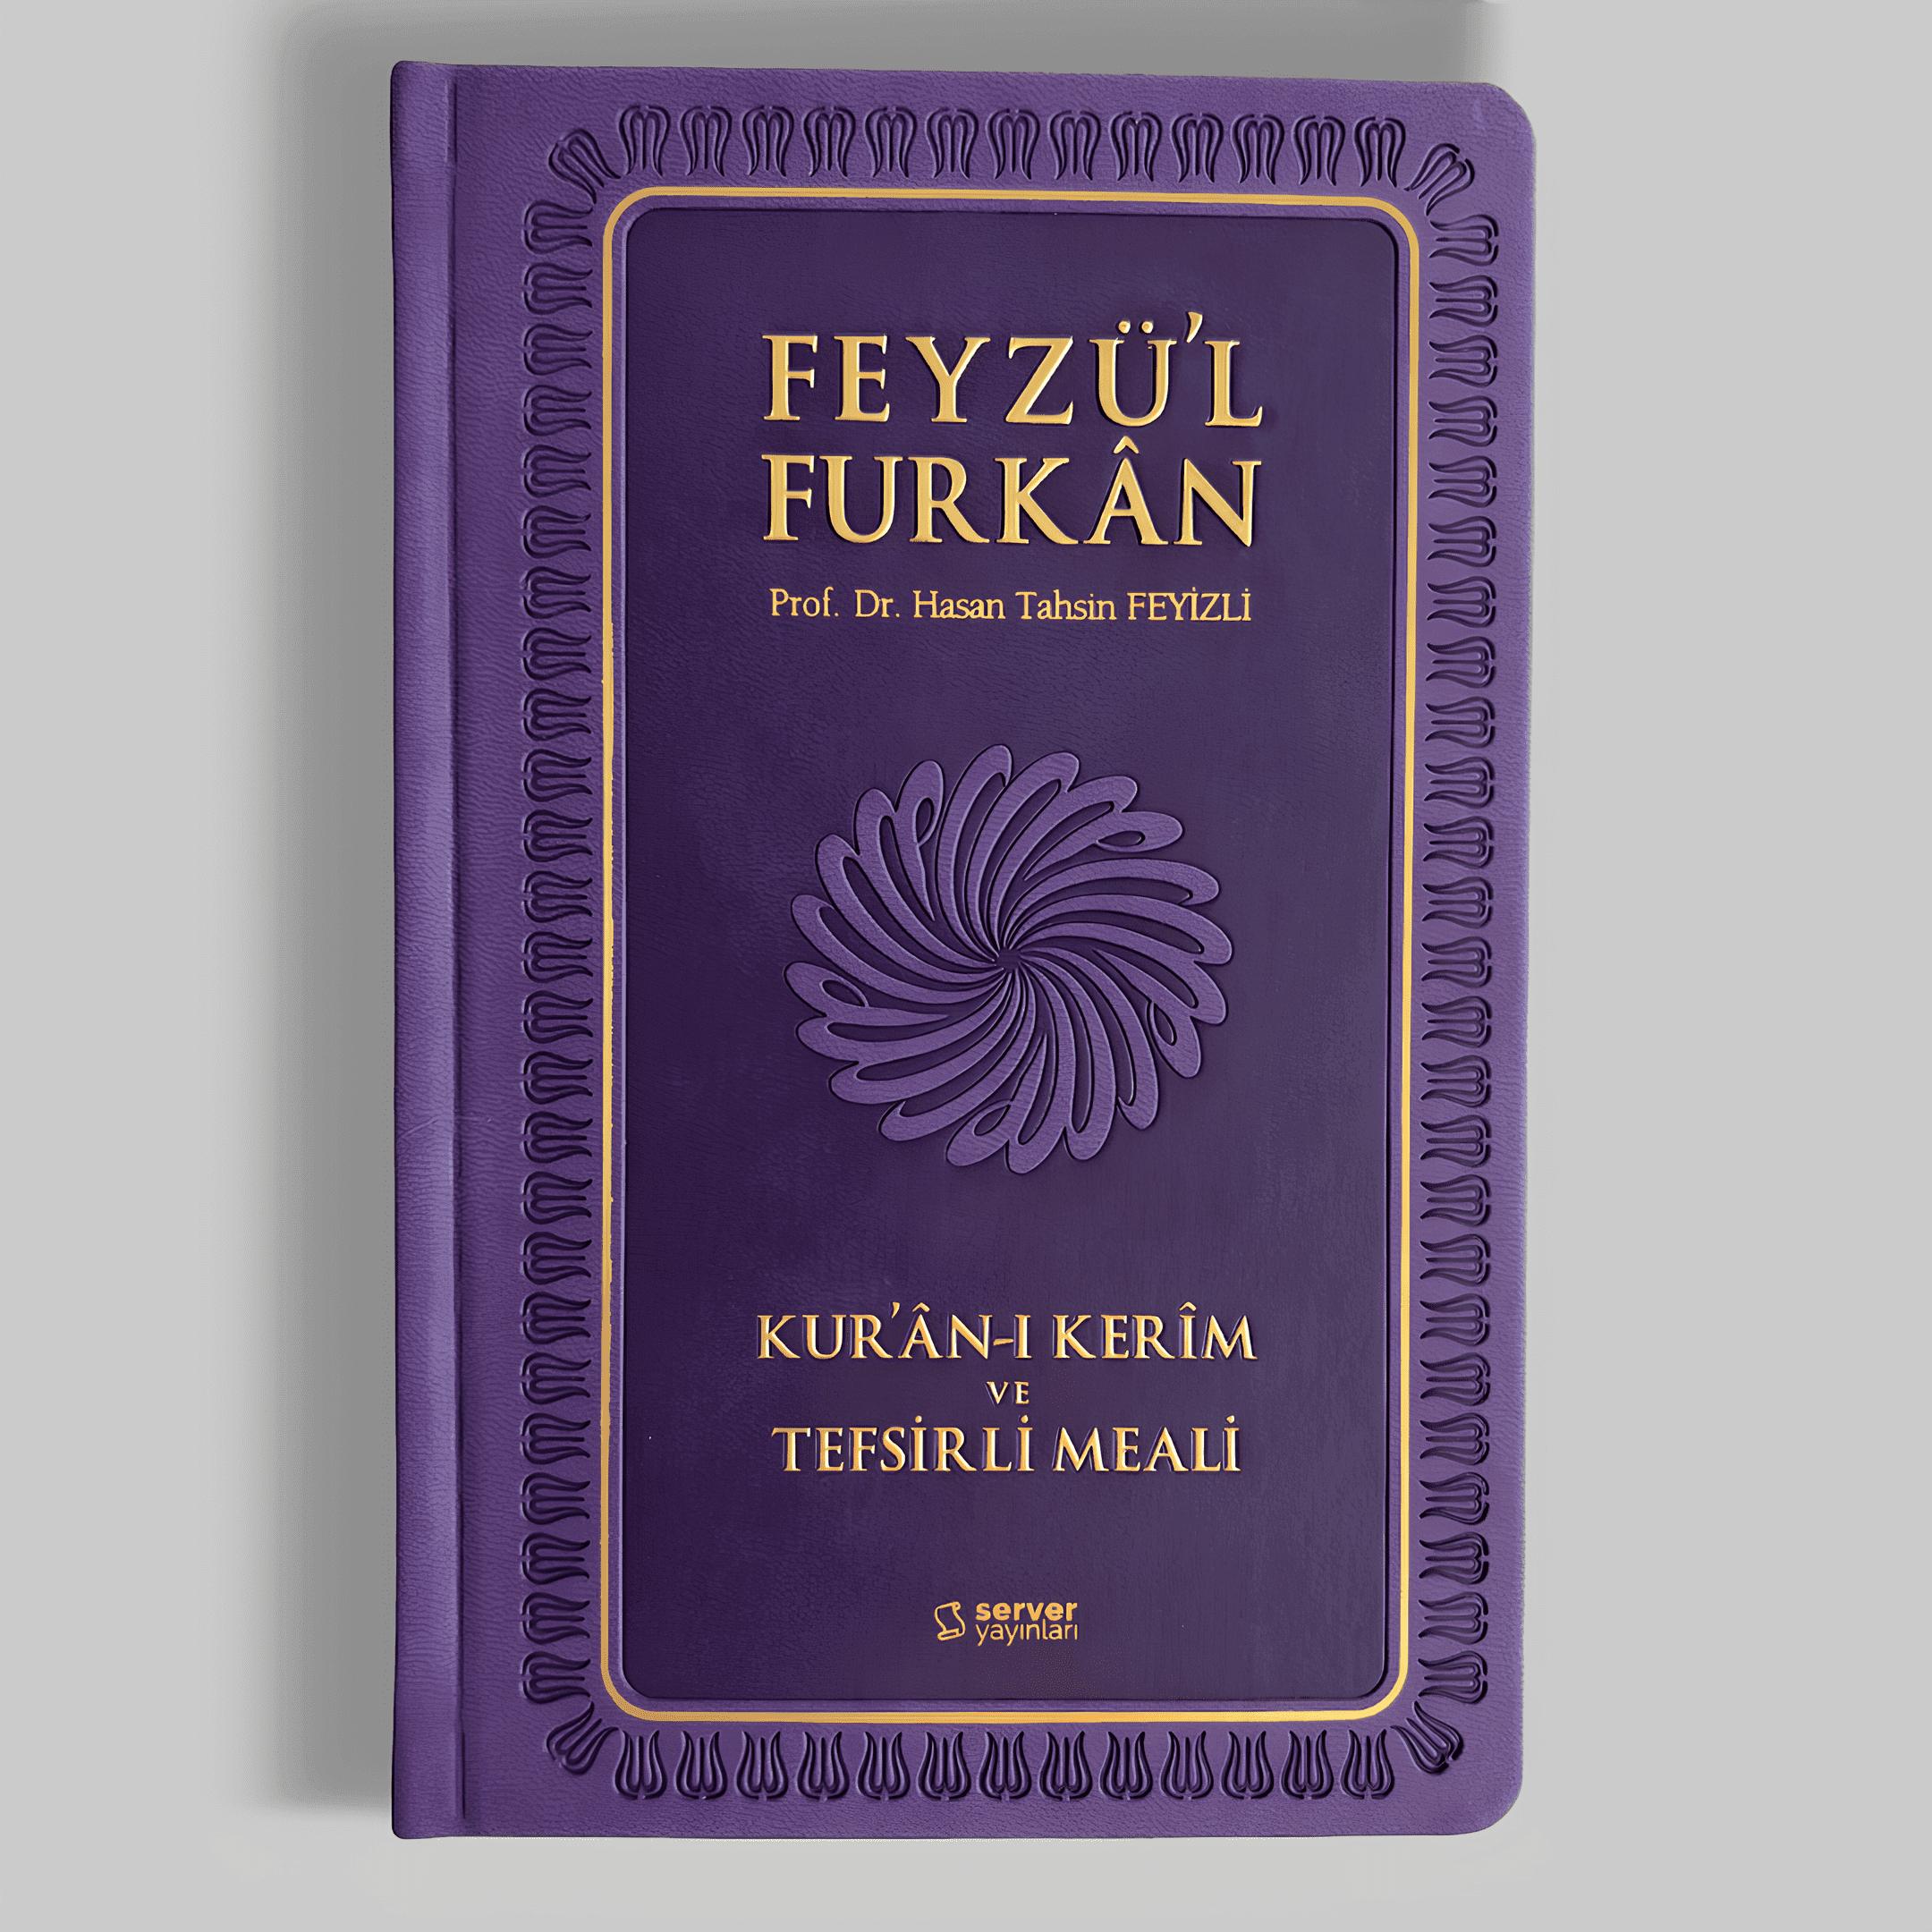 Feyzü'l Furkan Kur'ân-ı Kerîm ve Tefsirli Meali (Orta Boy - Mushaf ve Meal - Ciltli) 5 Renk